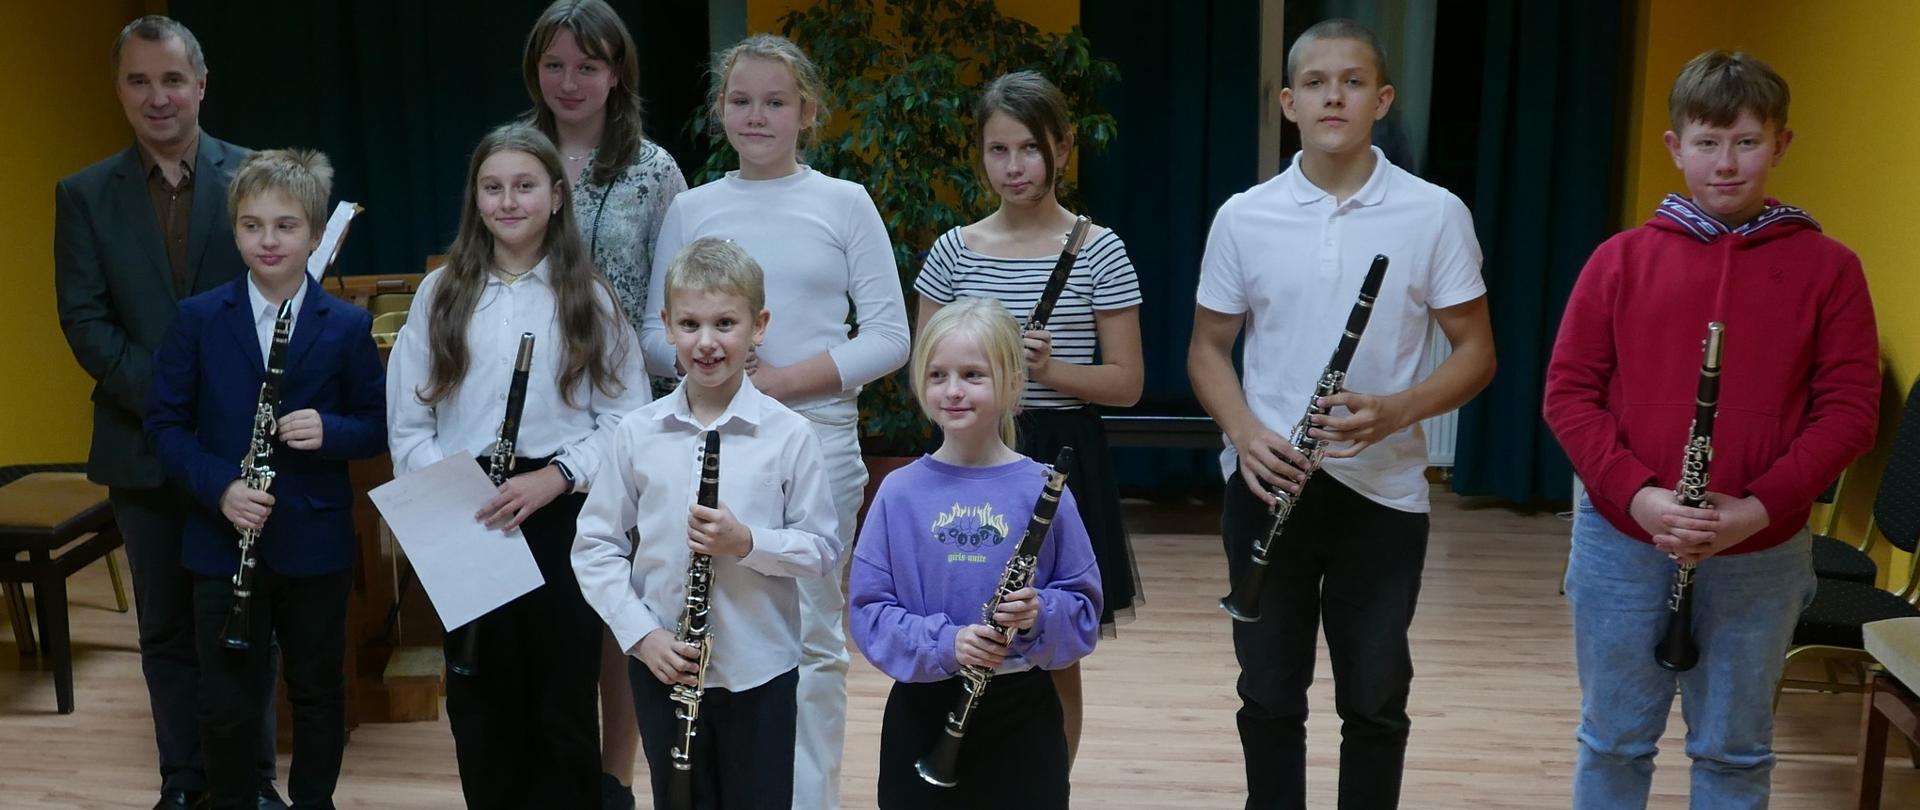 grupowe zdjęcie uczniów z klarnetami r rękach. Po lewej stronie stoi razem z nimi nauczyciel